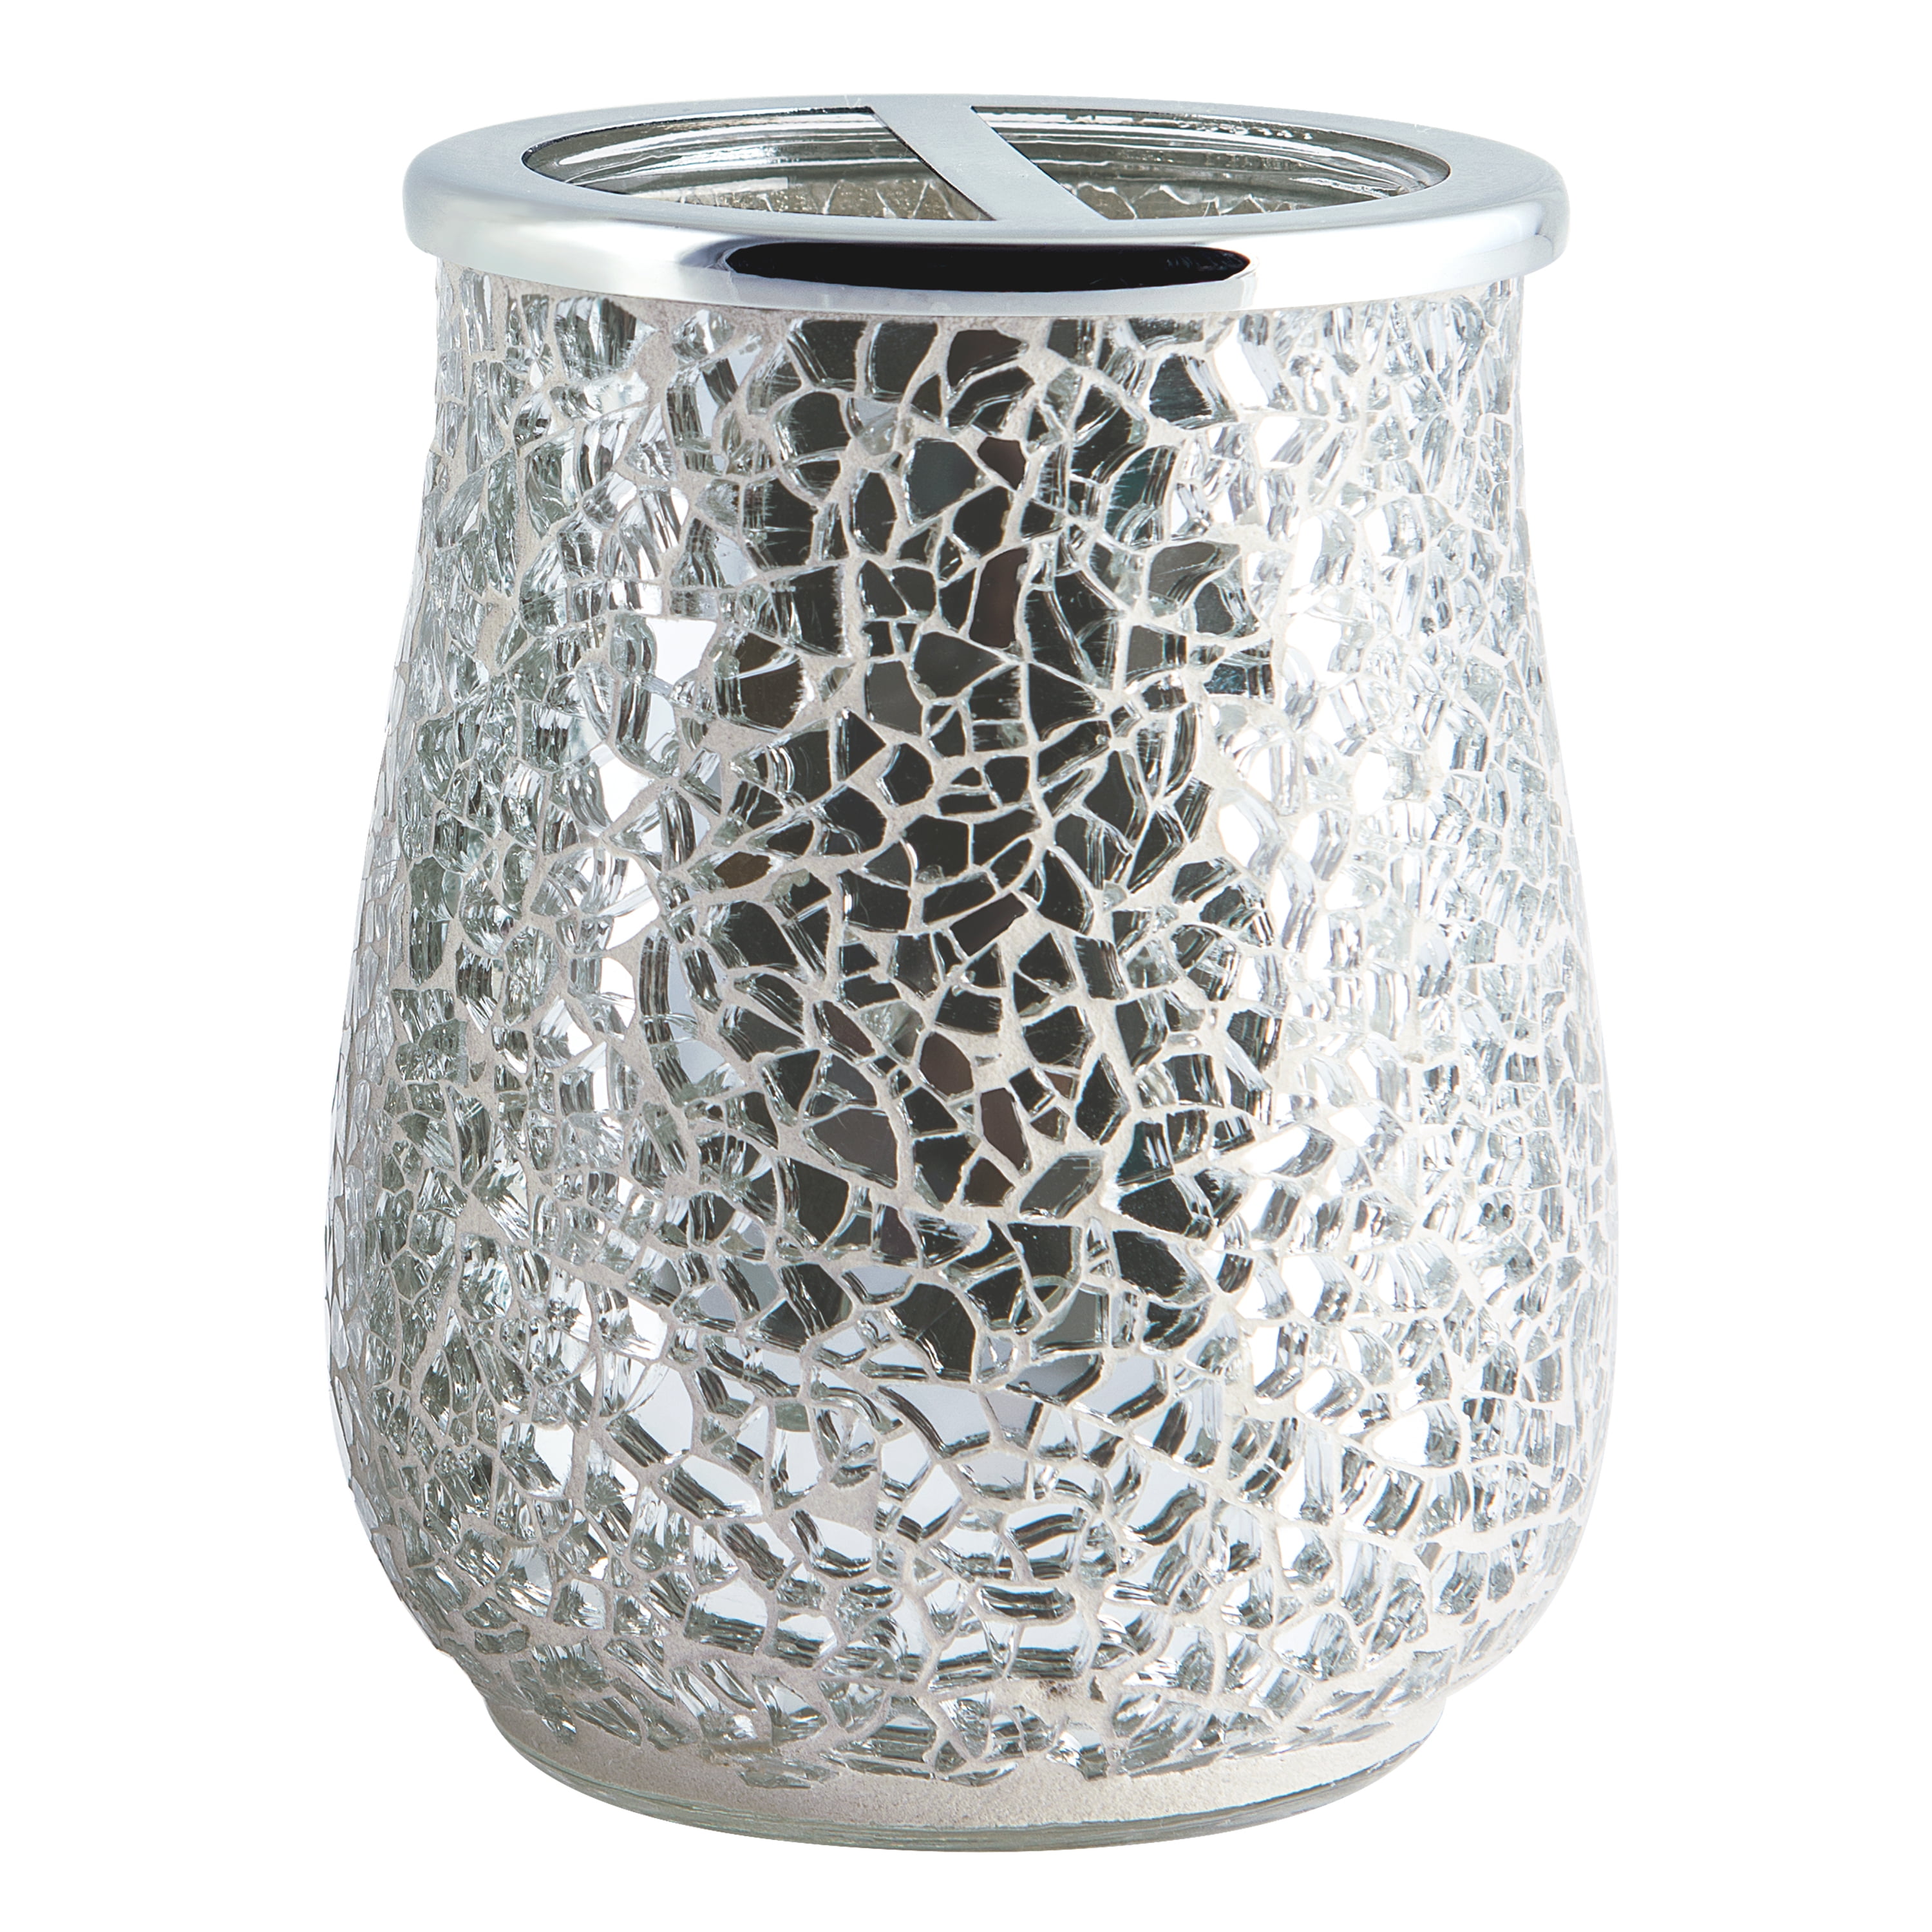 SET (3) HEAVY Crackle GLASS Silver METAL LID BATHROOM VANITY